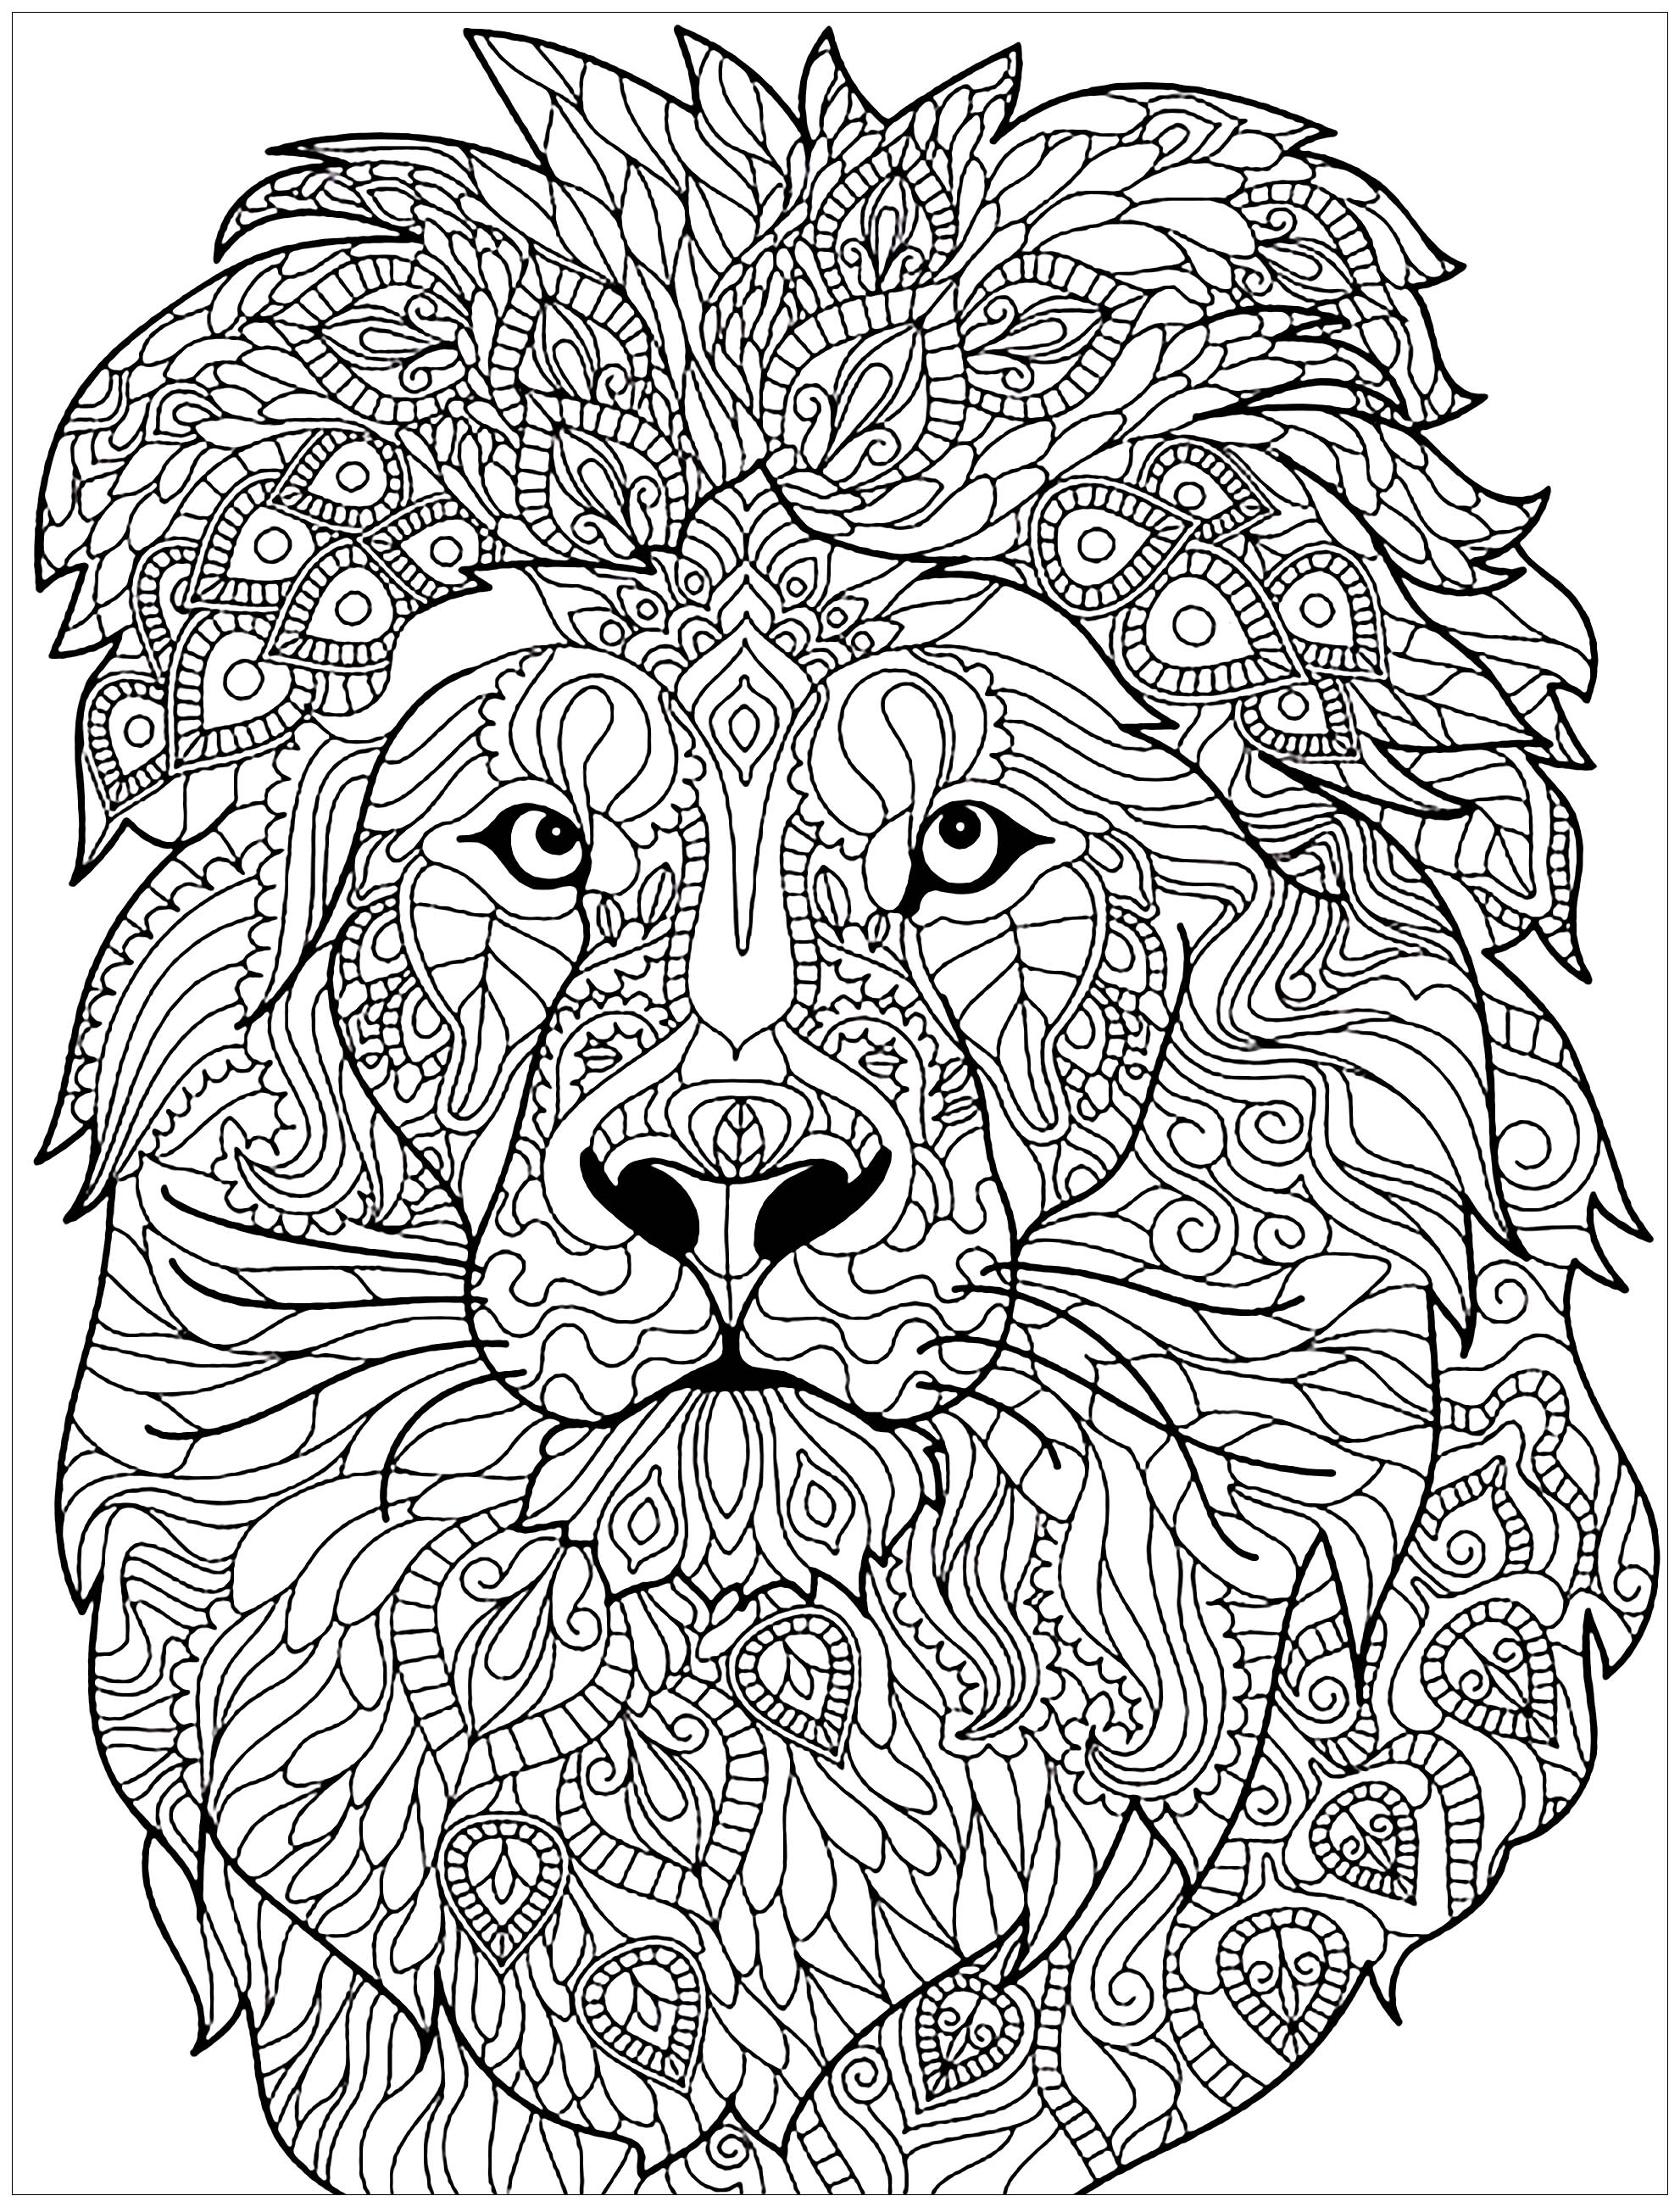 Disegni da colorare per adulti : Lions - 3